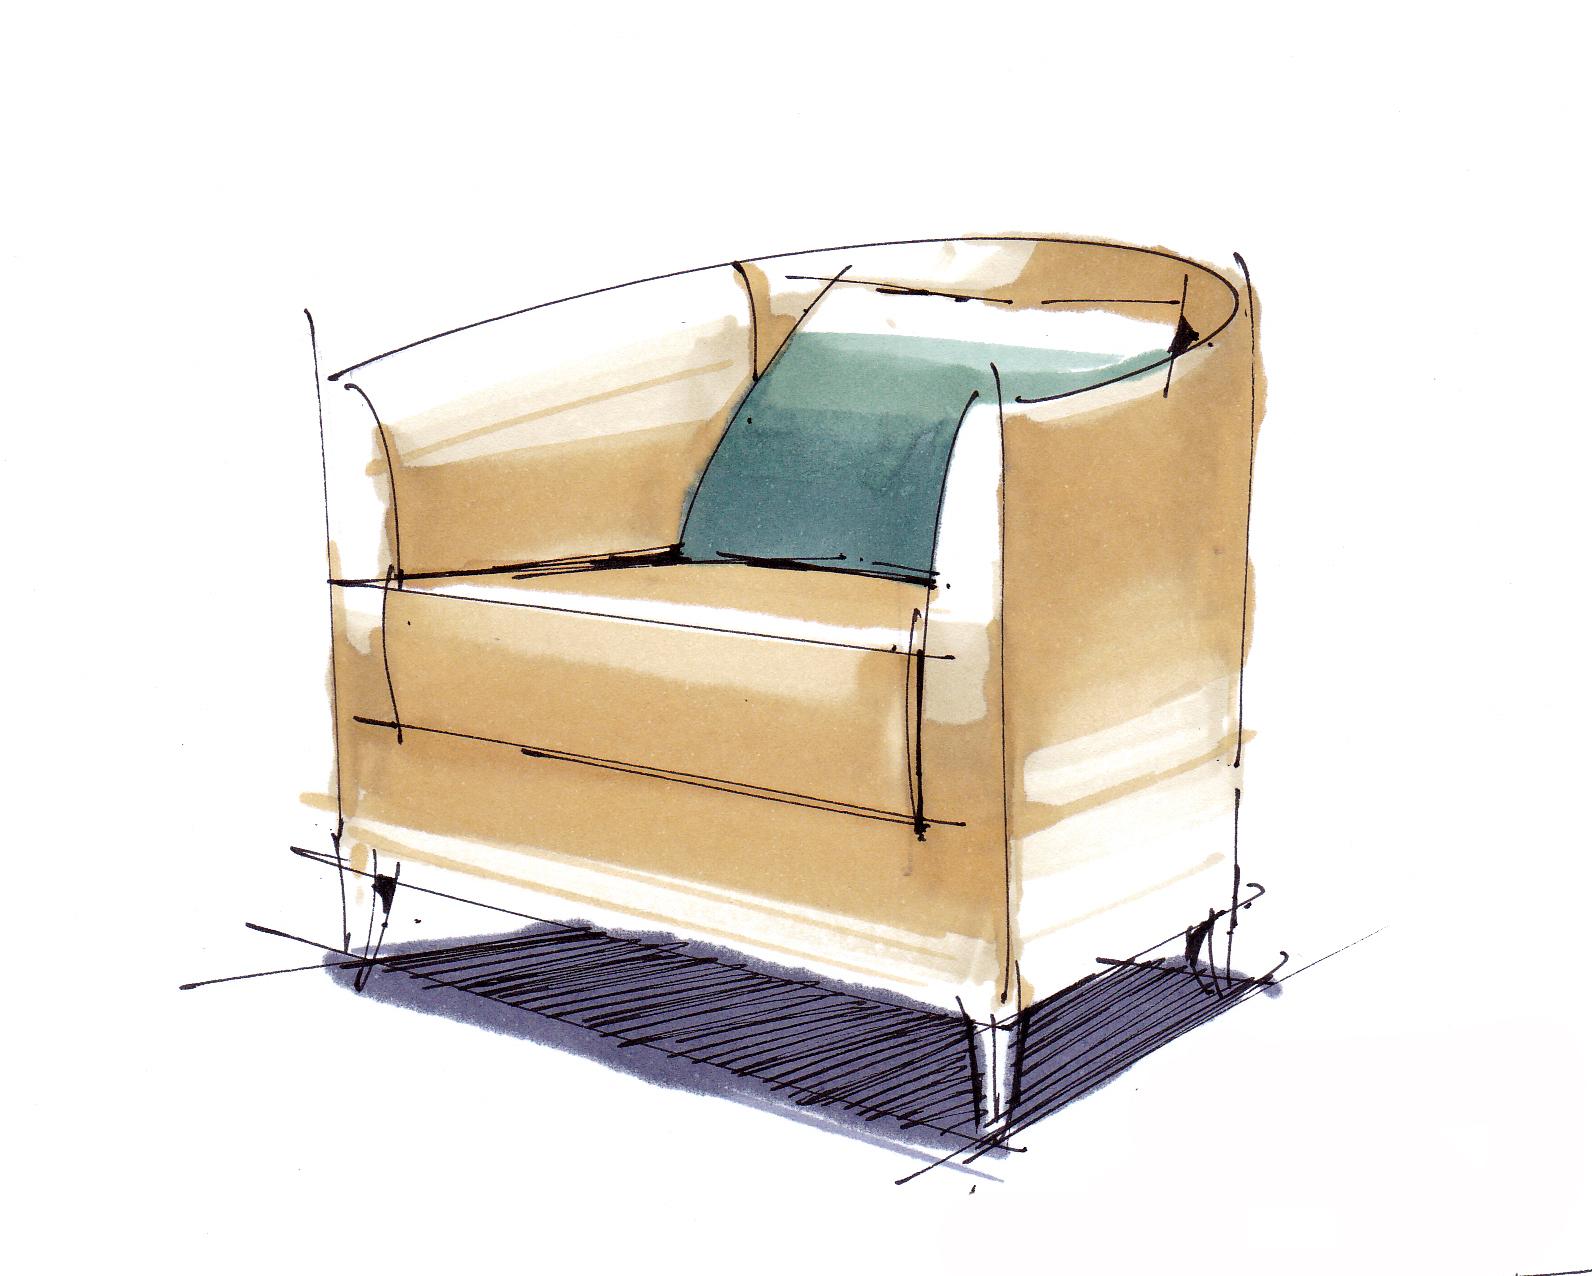 椅子设计手绘效果图-图库-五毛网